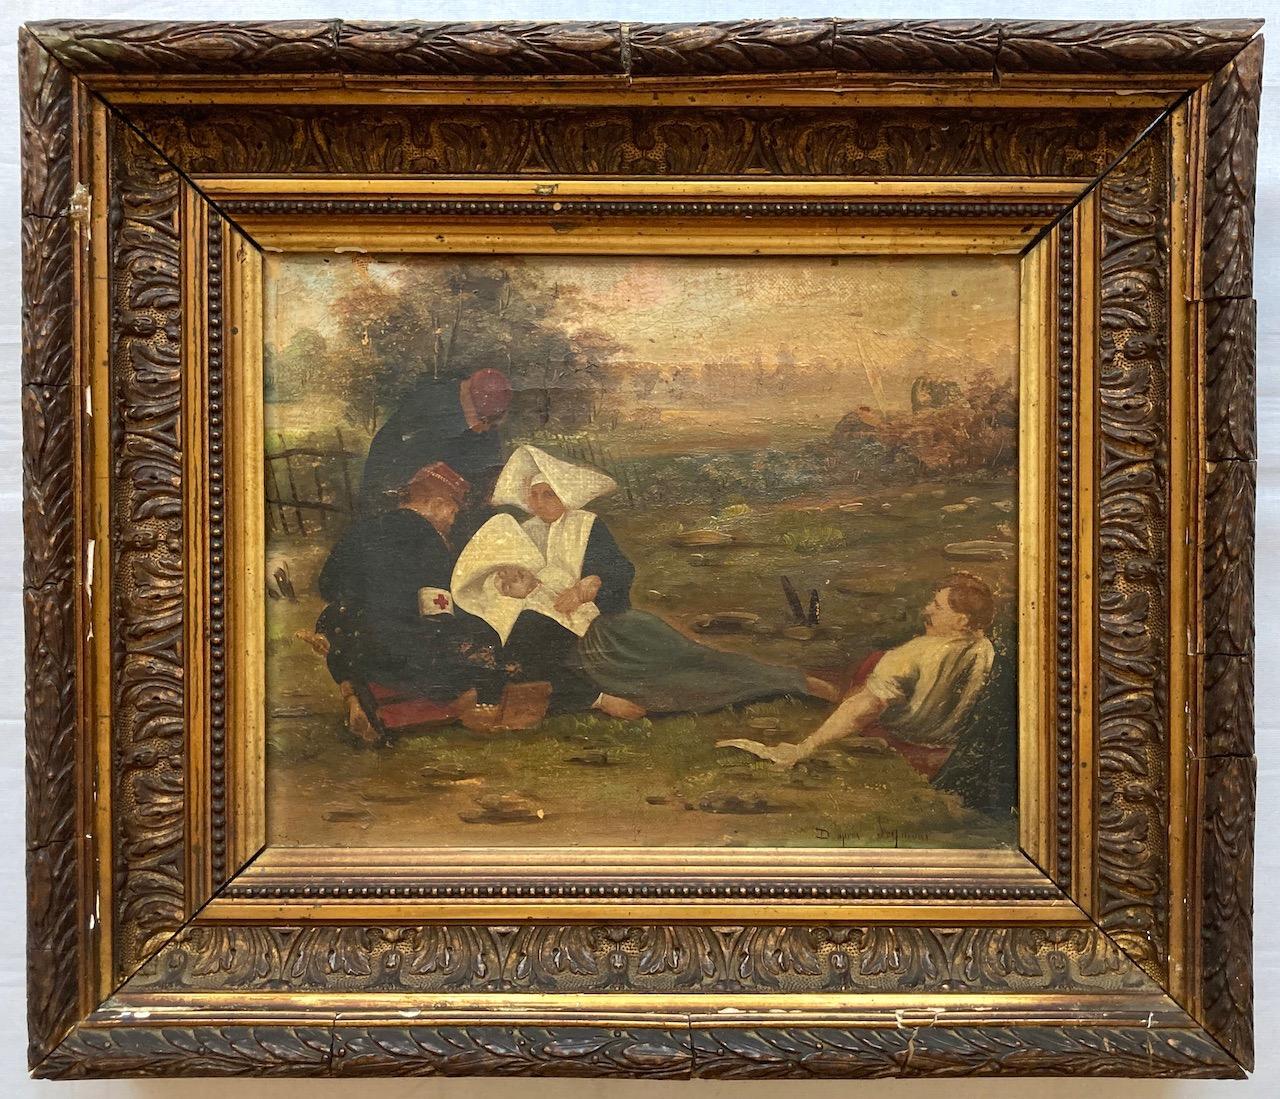 Neznámy majster - Ranená mníška a vojaci - Olej/Plátno - 19. storočie - Umenie